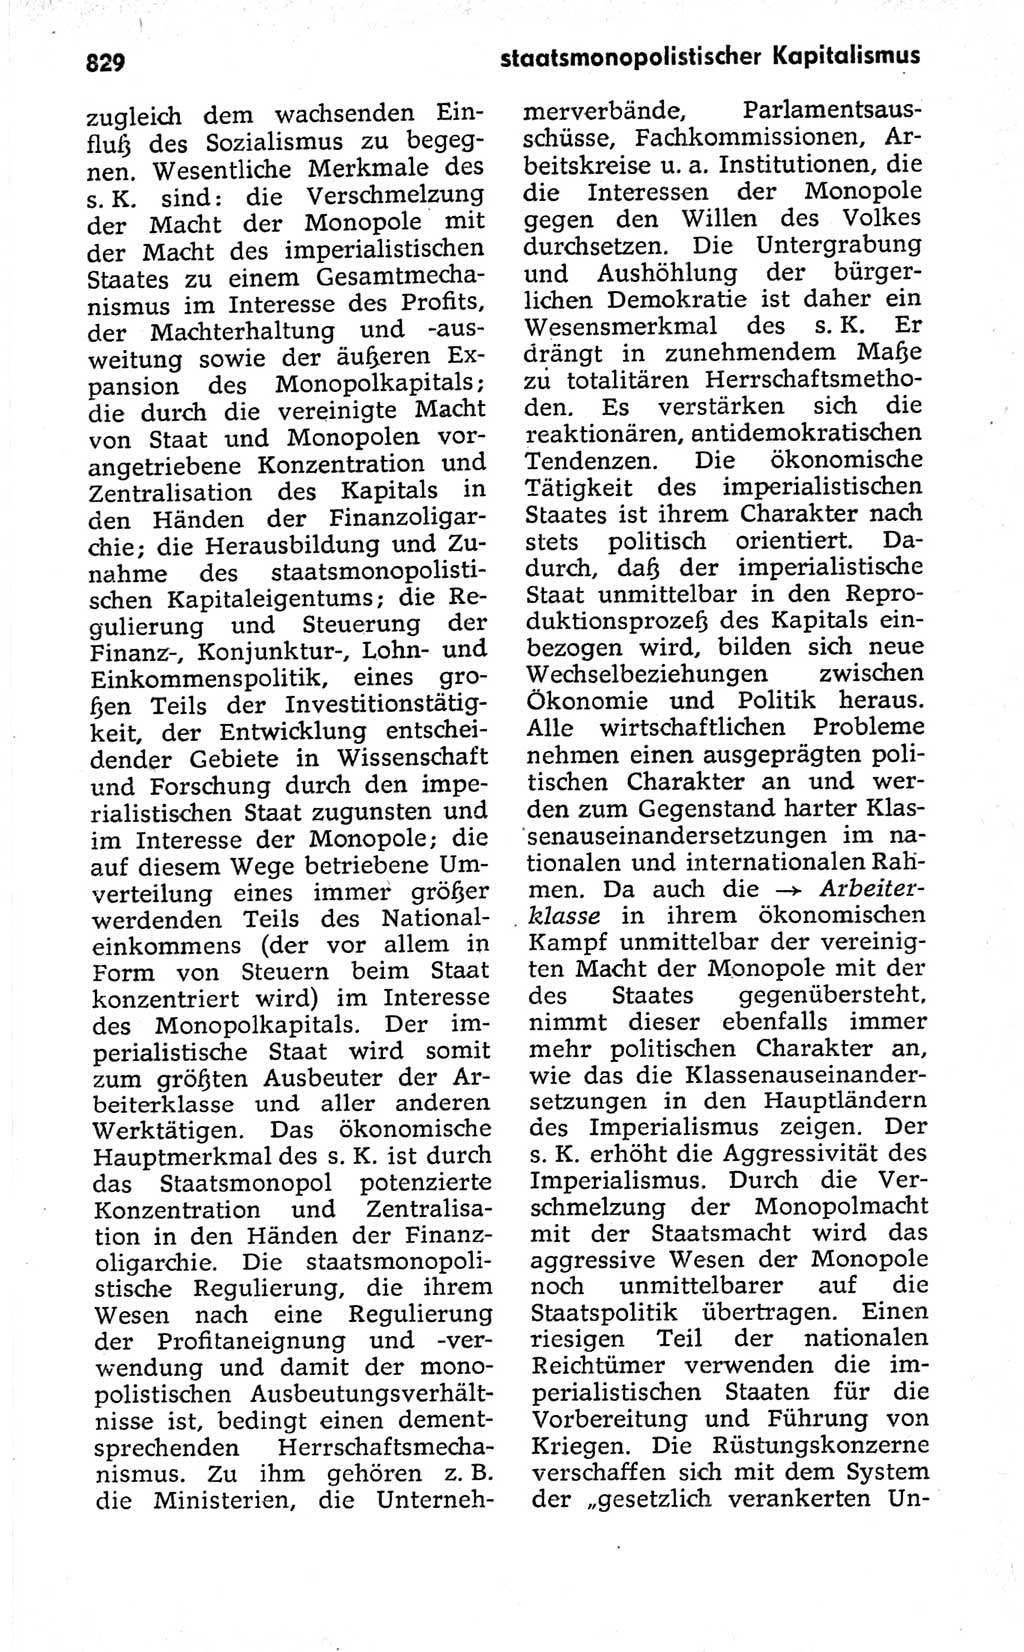 Kleines politisches Wörterbuch [Deutsche Demokratische Republik (DDR)] 1973, Seite 829 (Kl. pol. Wb. DDR 1973, S. 829)